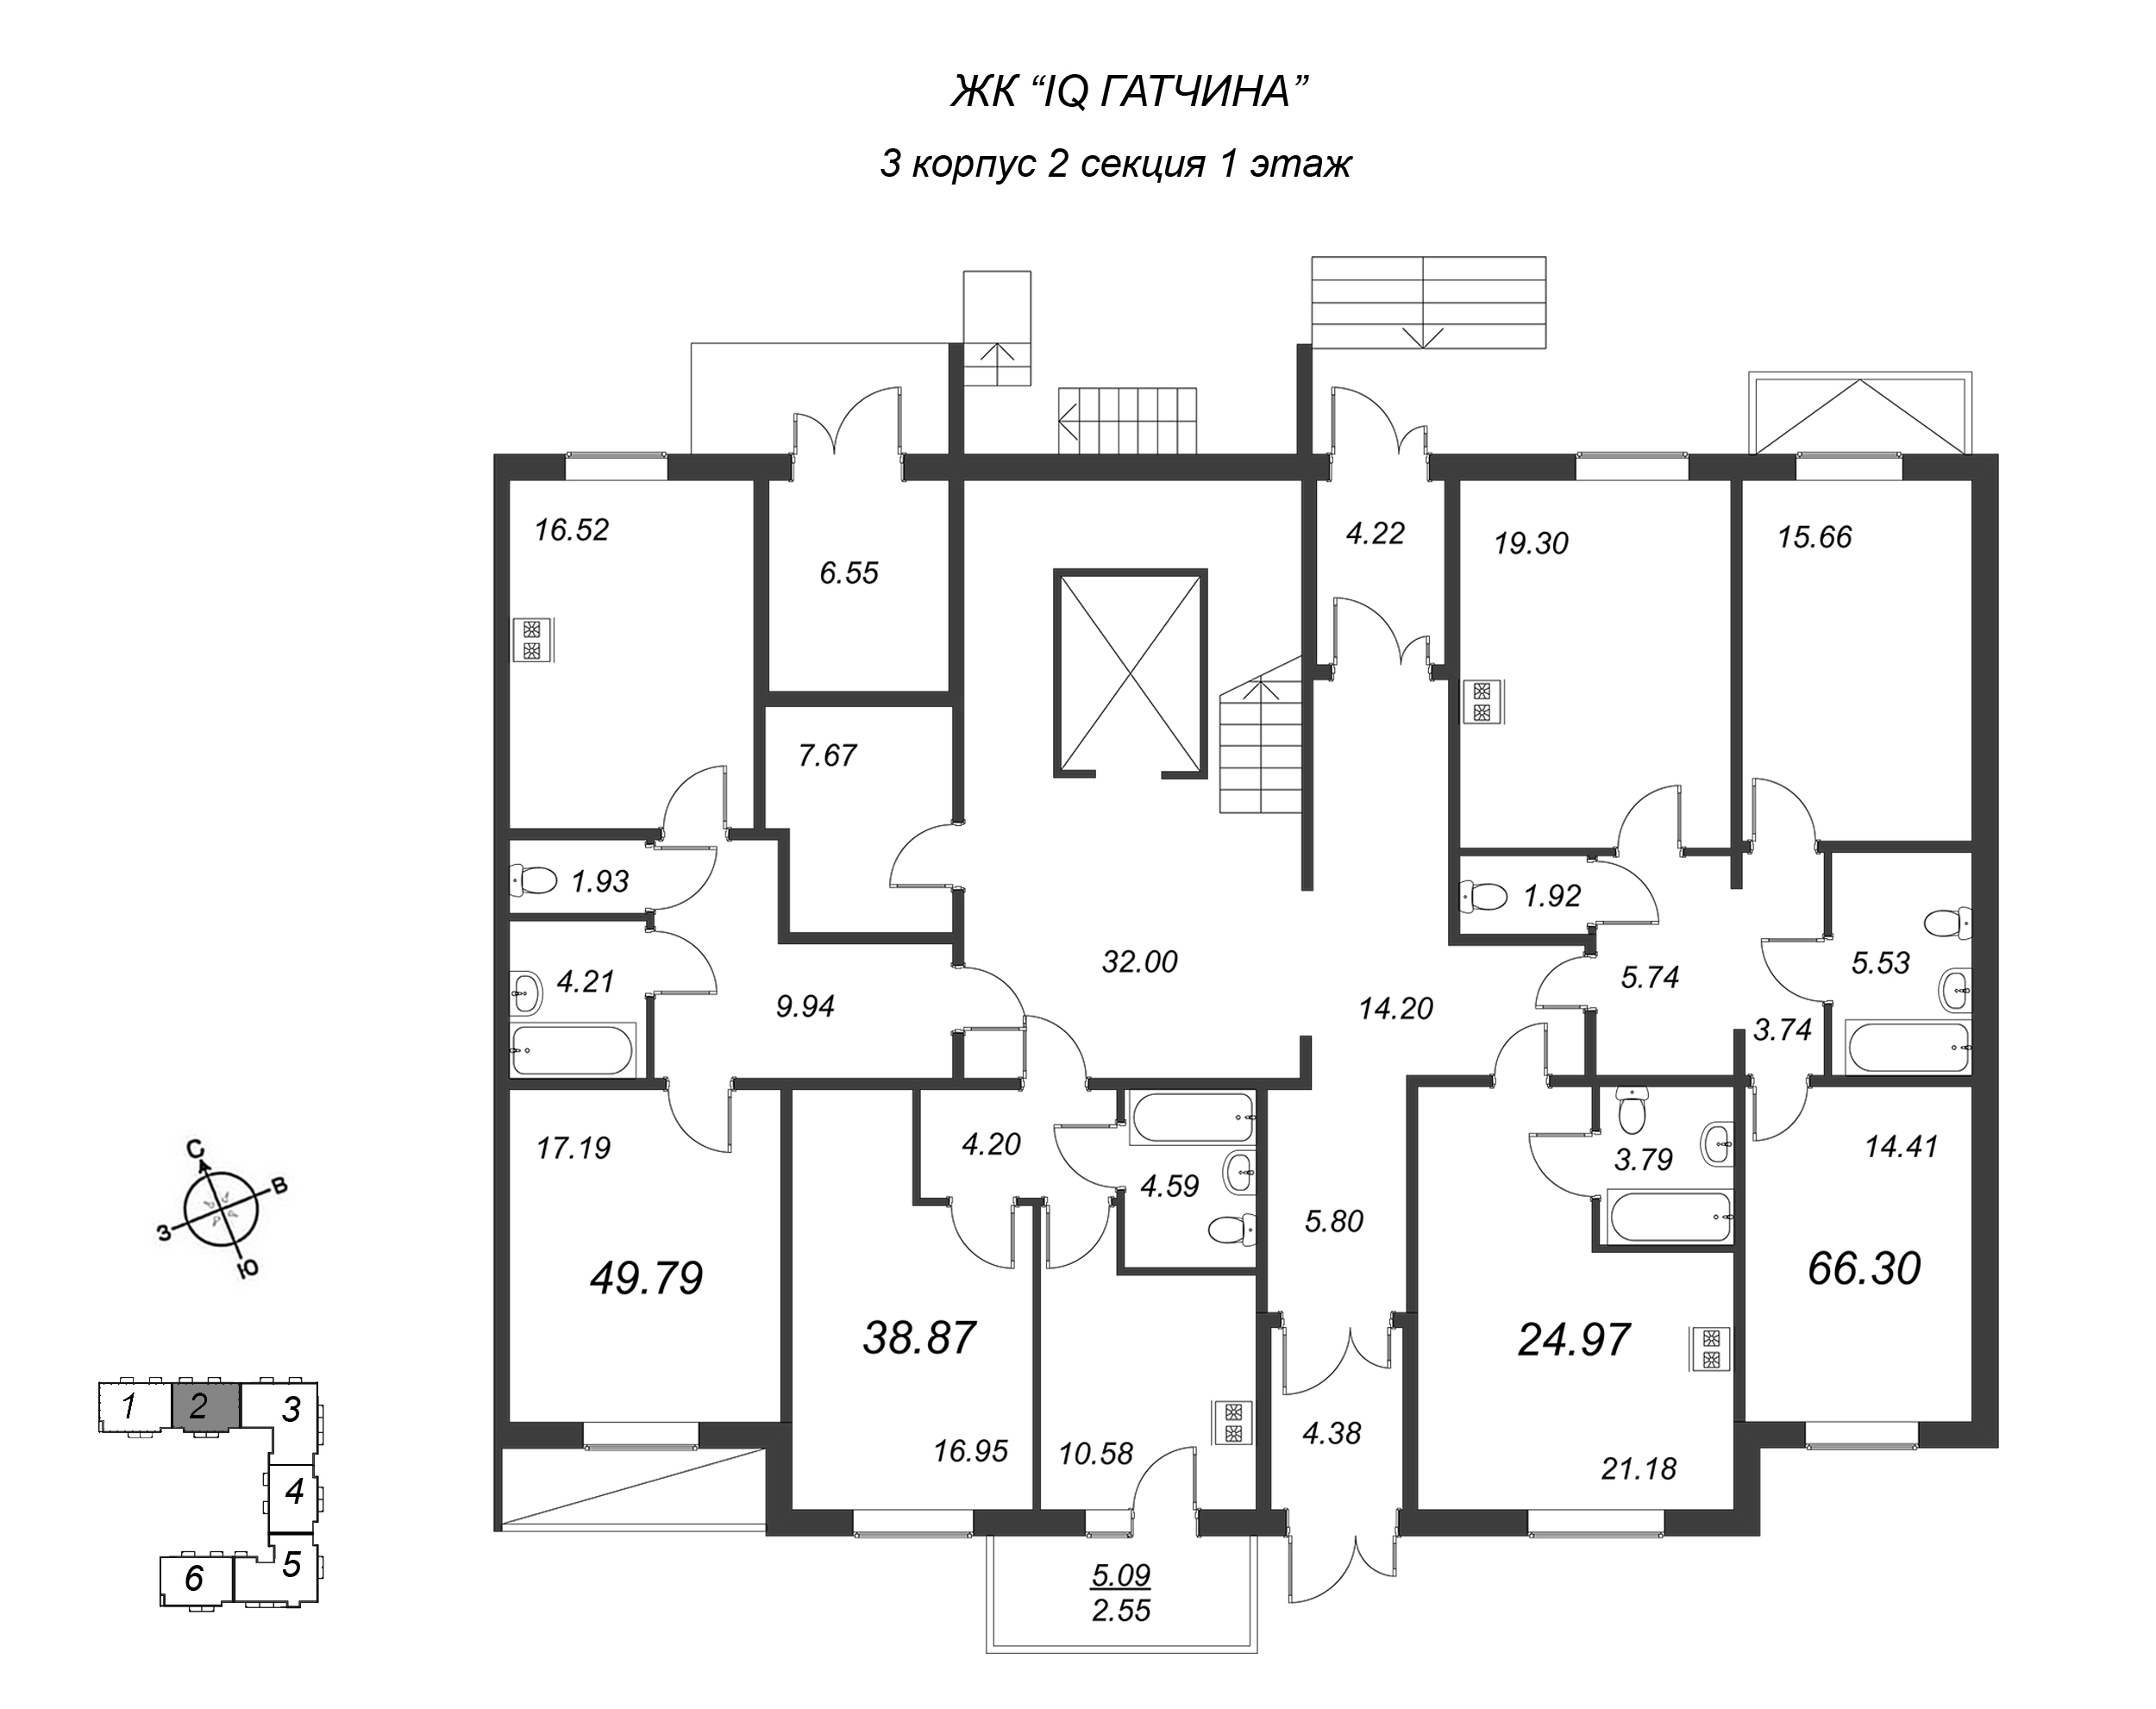 1-комнатная квартира, 49.79 м² в ЖК "IQ Гатчина" - планировка этажа